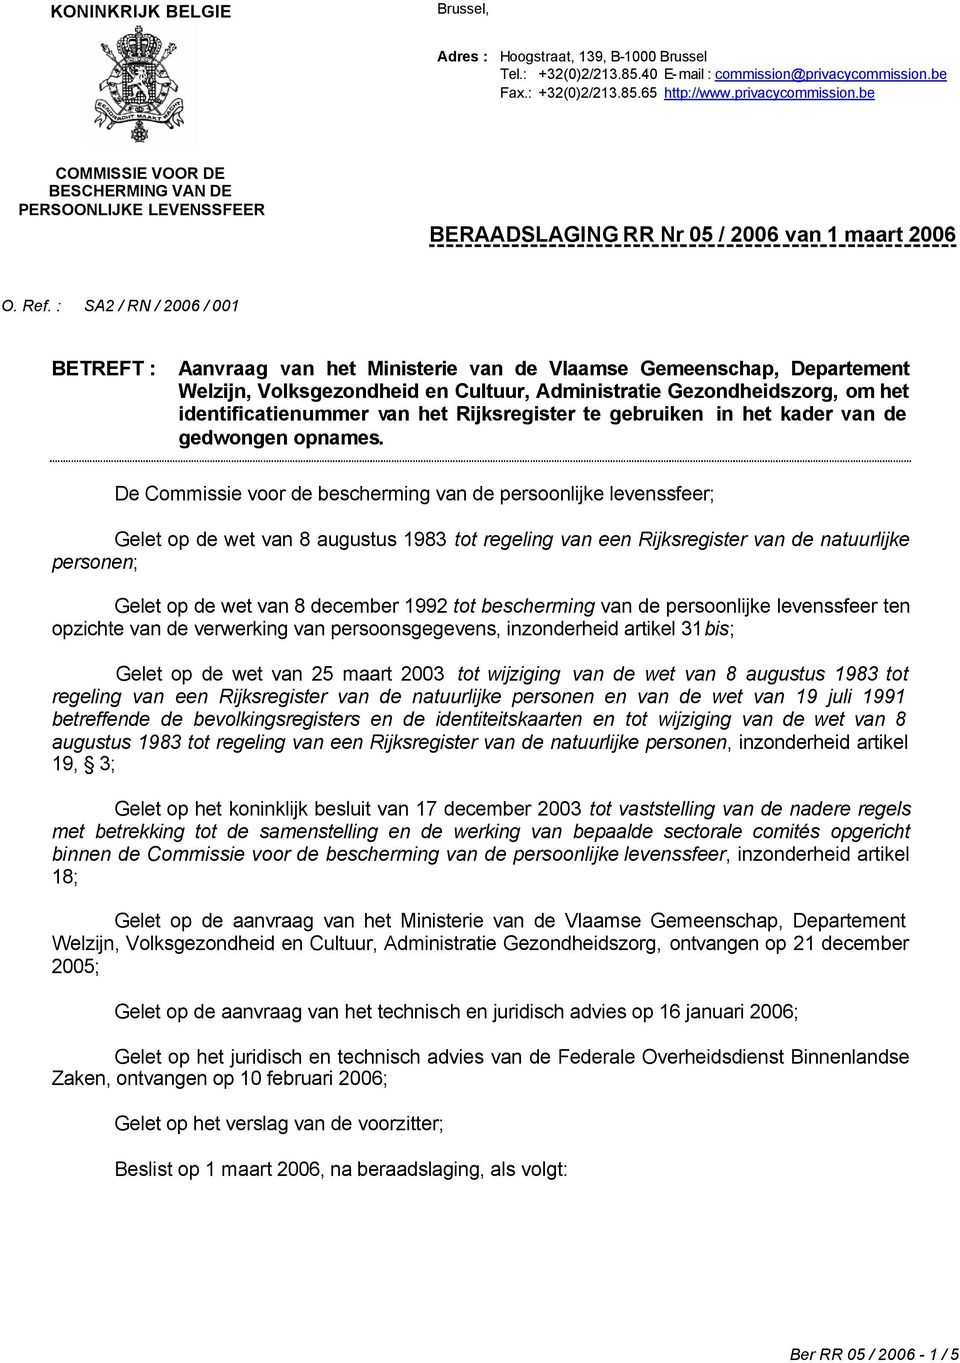 : SA2 / RN / 2006 / 001 BETREFT : Aanvraag van het Ministerie van de Vlaamse Gemeenschap, Departement Welzijn, Volksgezondheid en Cultuur, Administratie Gezondheidszorg, om het identificatienummer